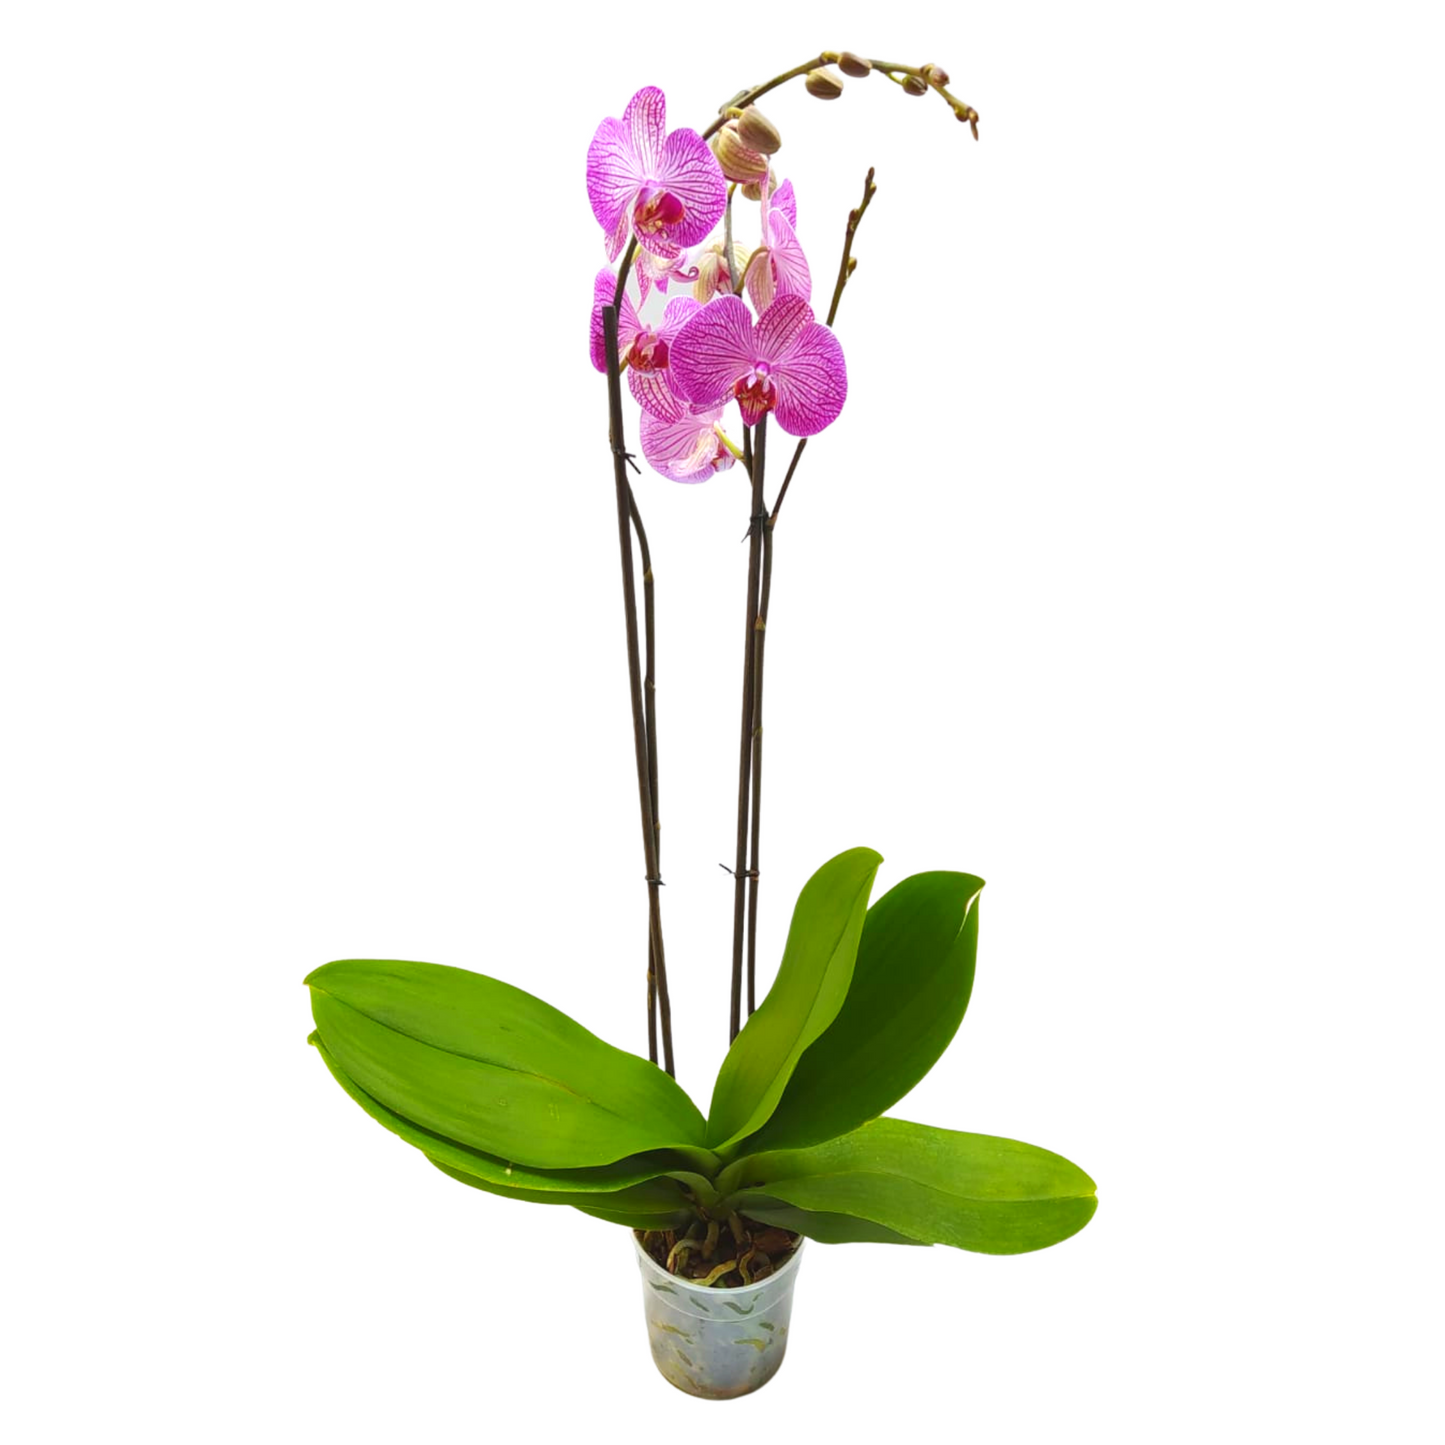 Orquídea dos varas